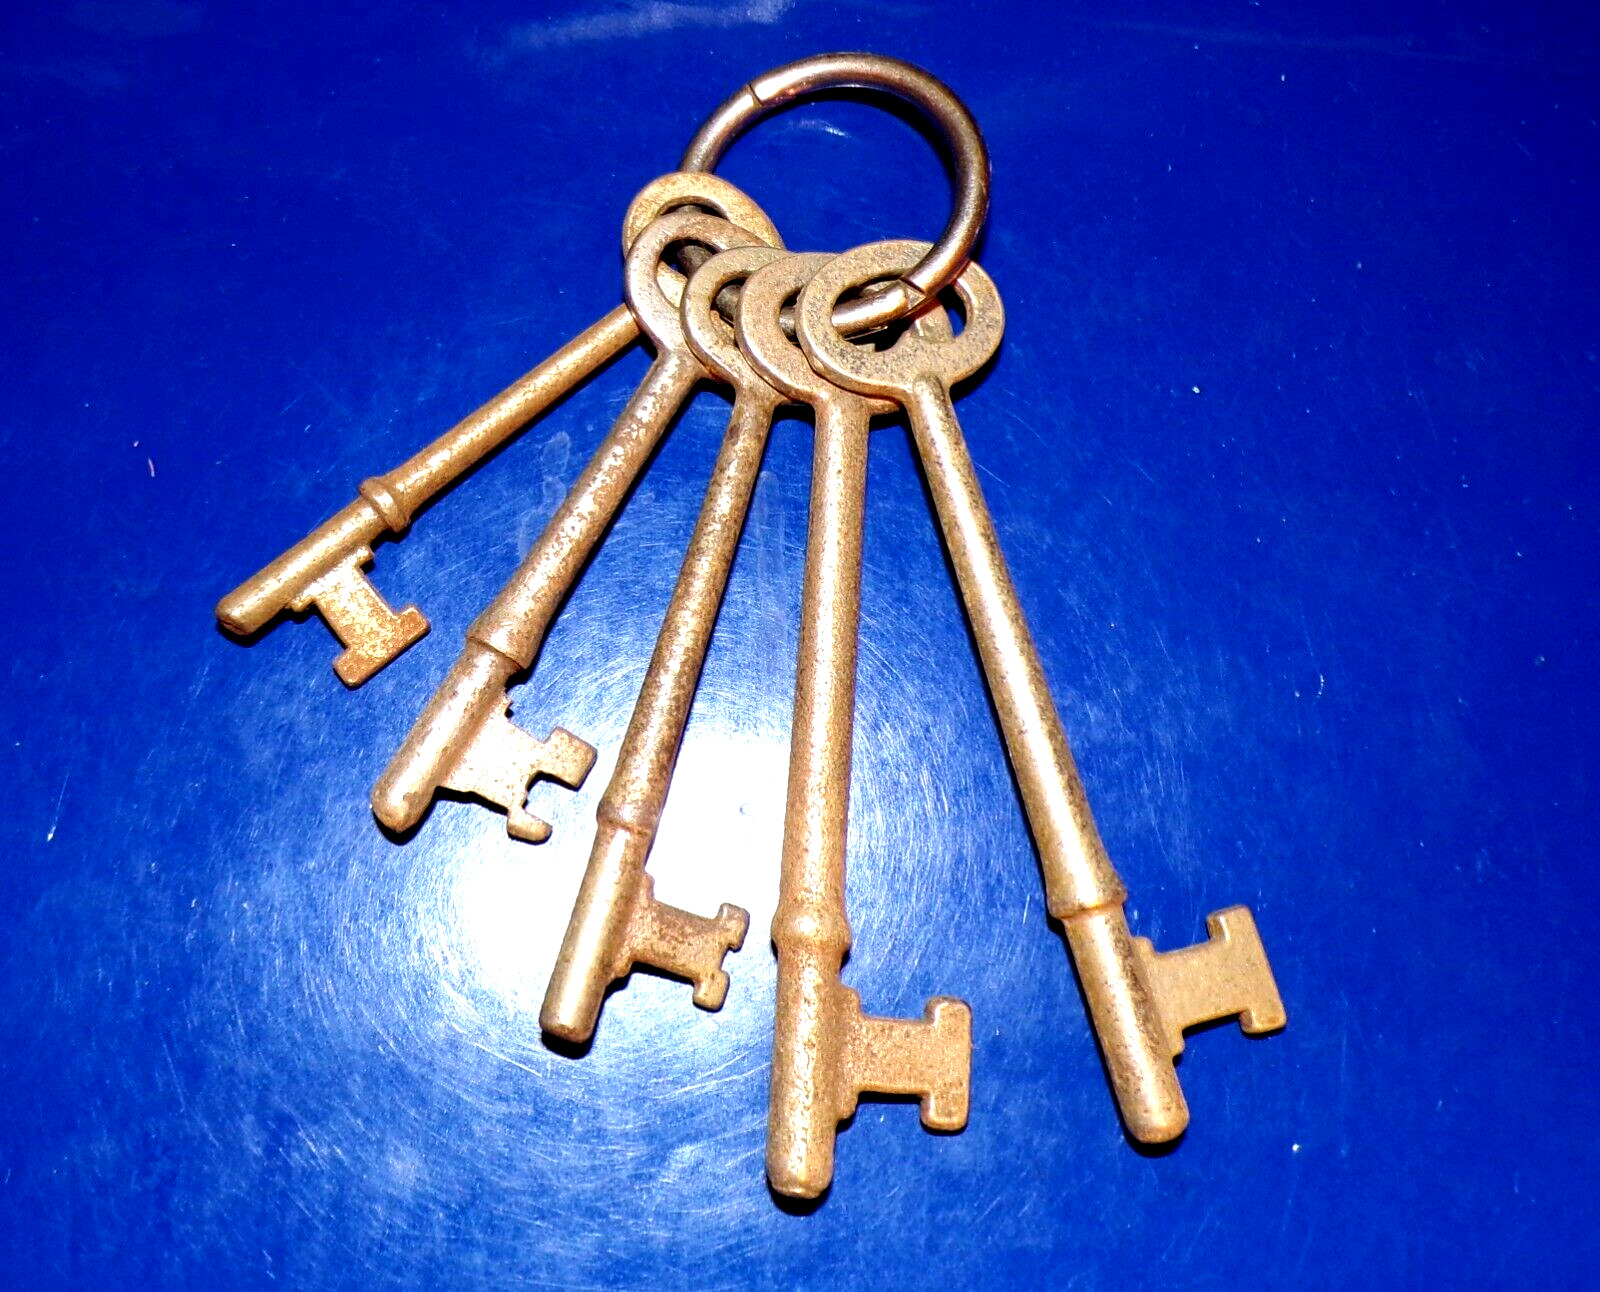 Lot of Five Antique Mortise Lock Skeleton Keys